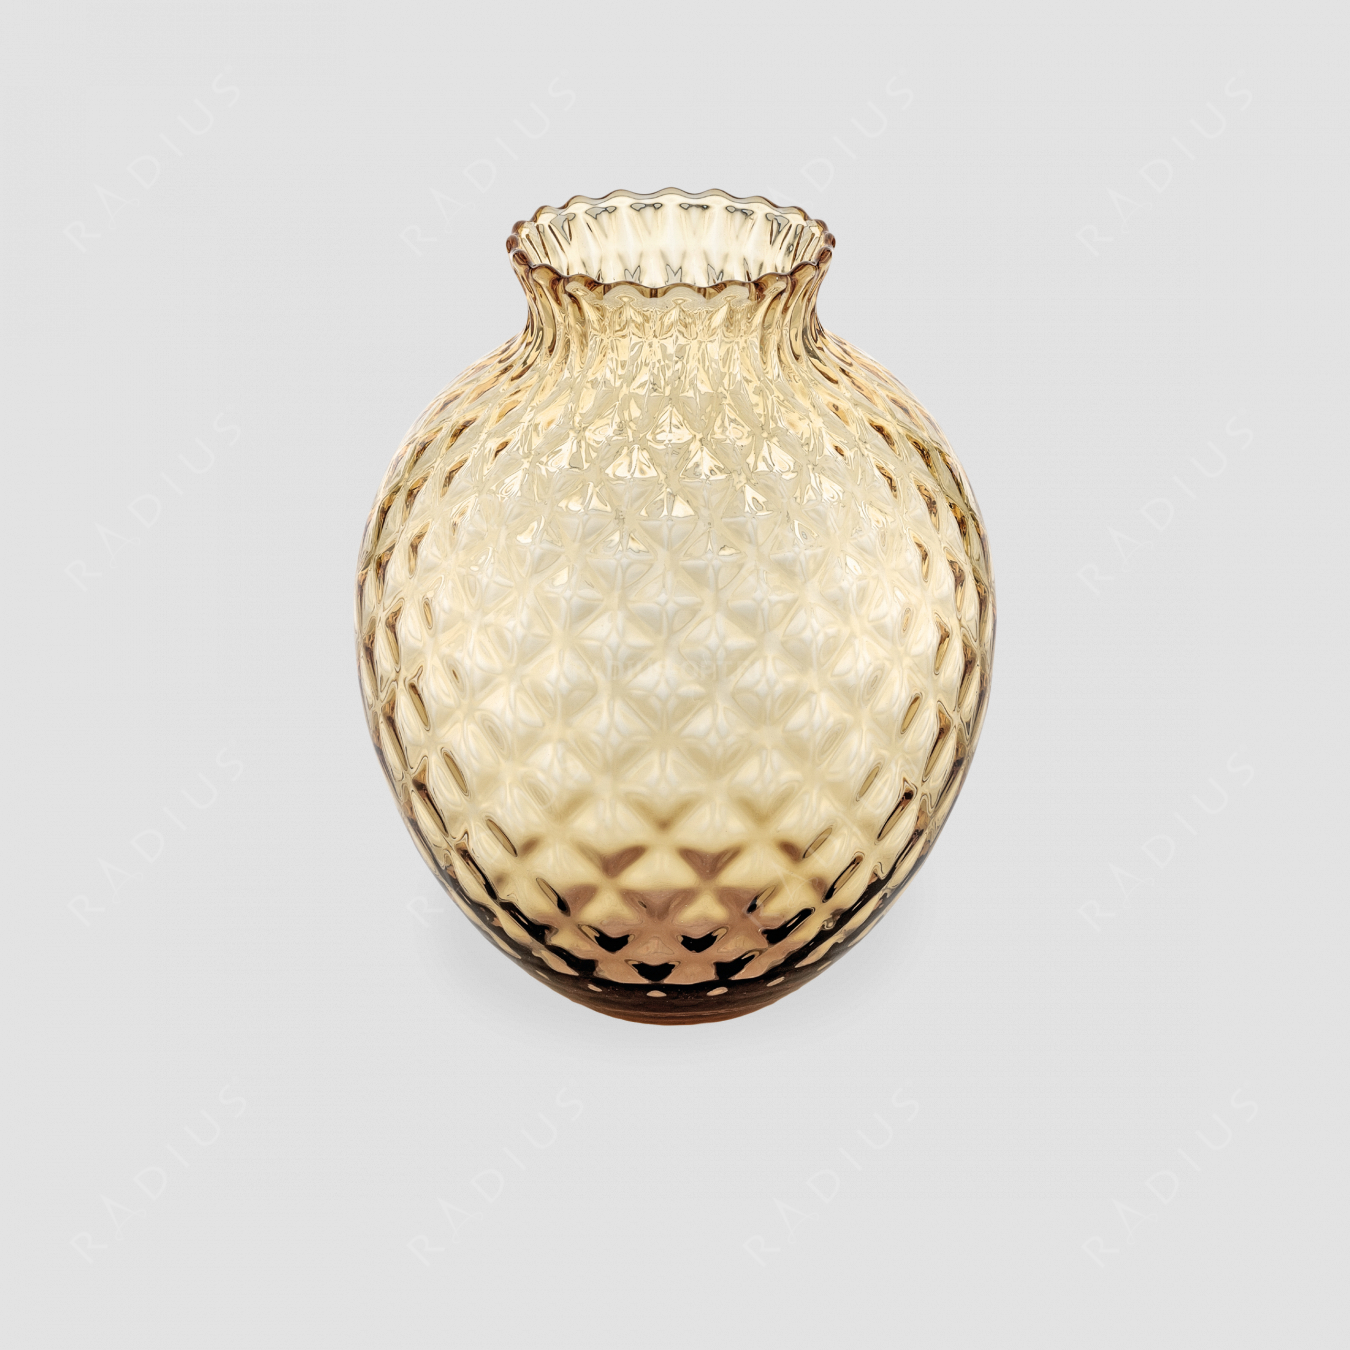 Стеклянная ваза для цветов, диаметр: 19,7 см, высота: 25 см, материал: стекло, цвет медовый, серия Infiore, IVV (Italy), Италия